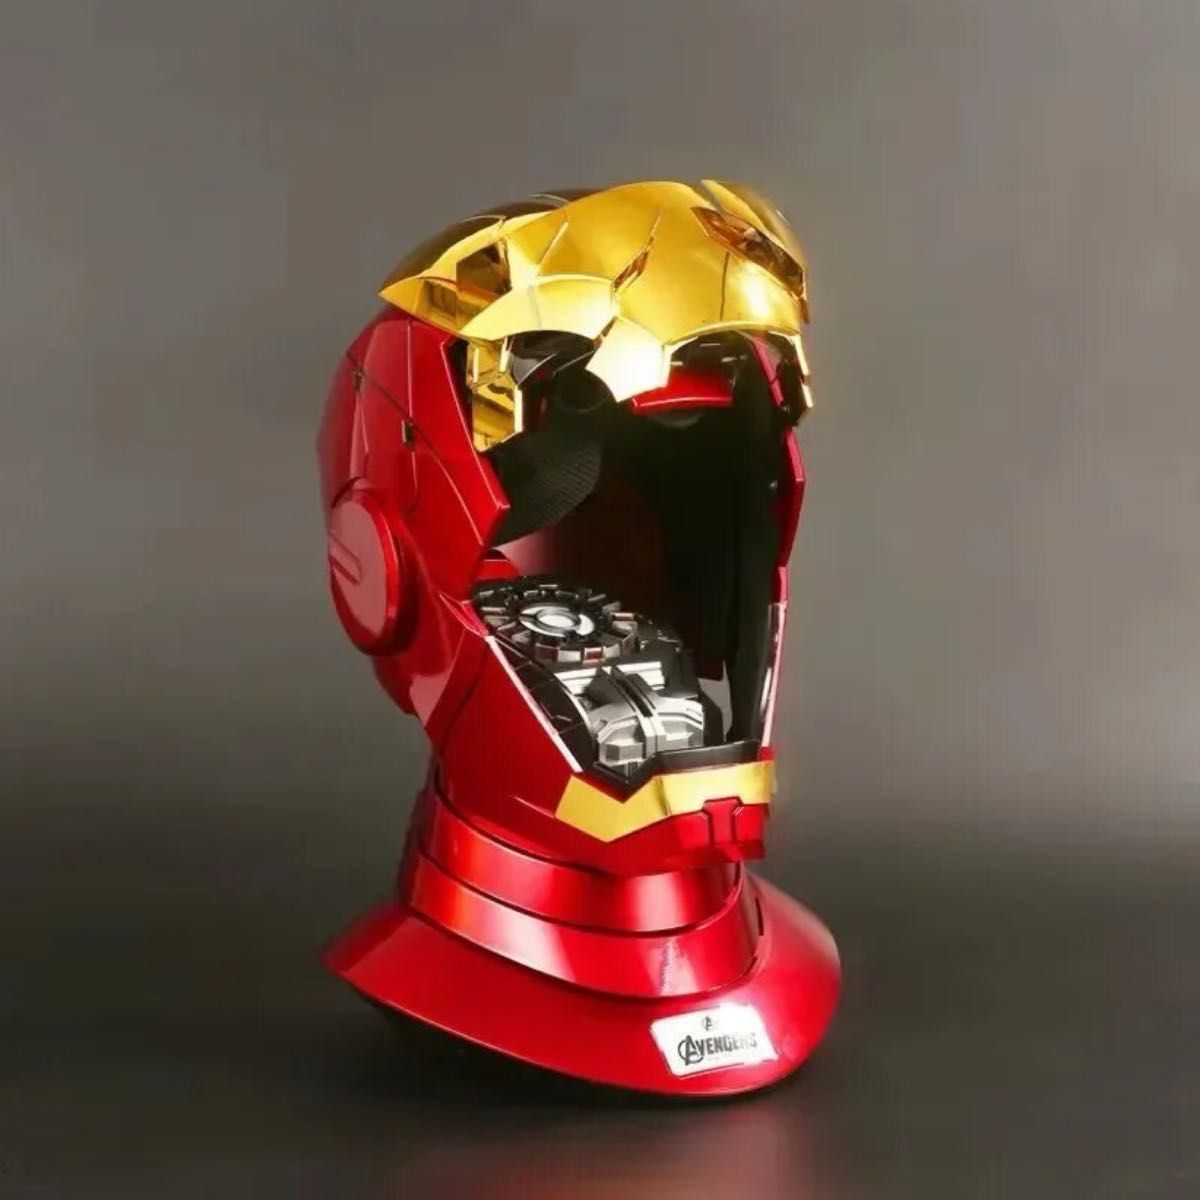 アイアンマンマスク【2種カラー有】アップデートヘルメット 自動開閉式音声認識開閉可能 AUTOKING マスクマスク コスプレ 